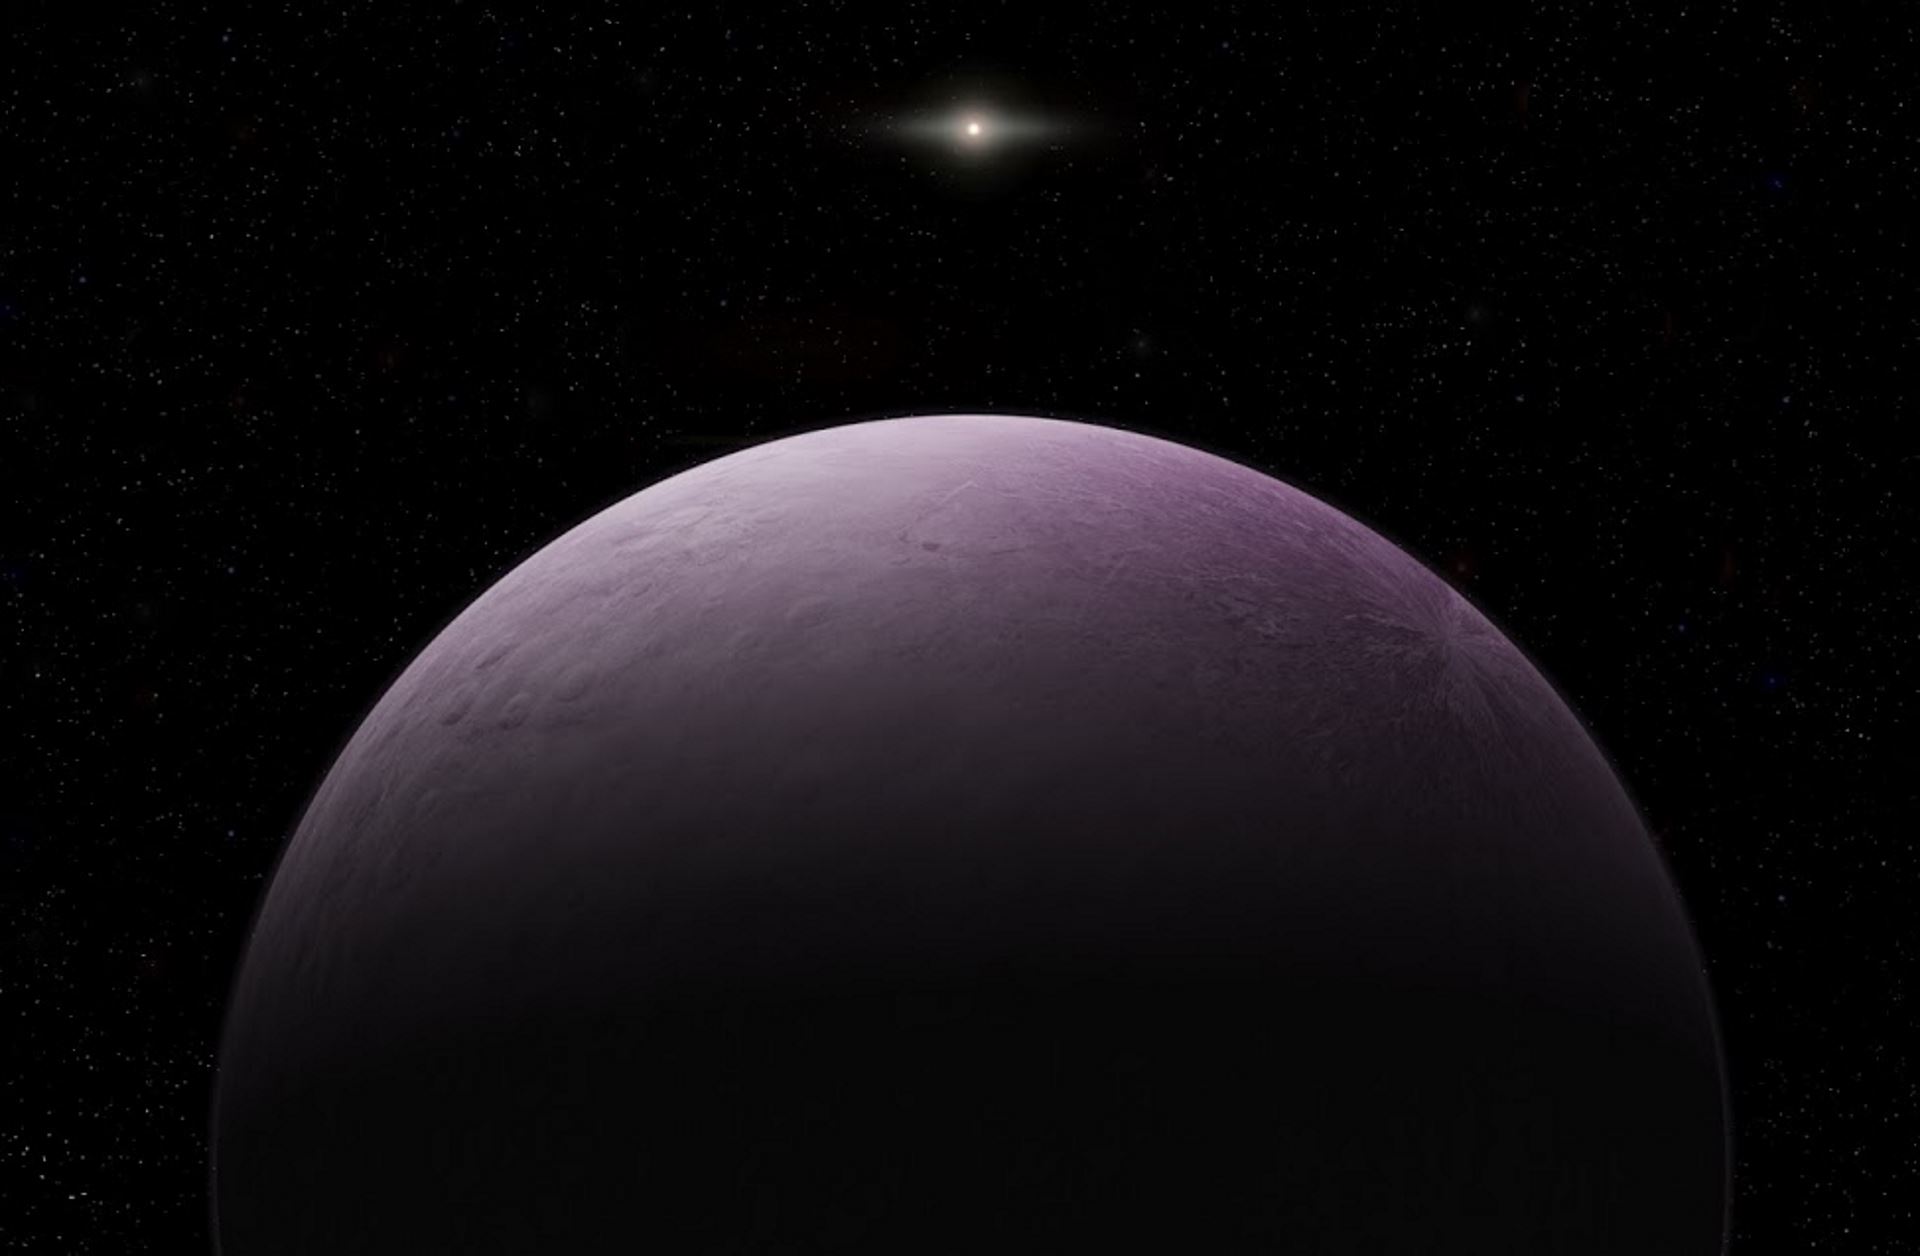 Farout, el objeto más lejano descubierto en el Sistema Solar